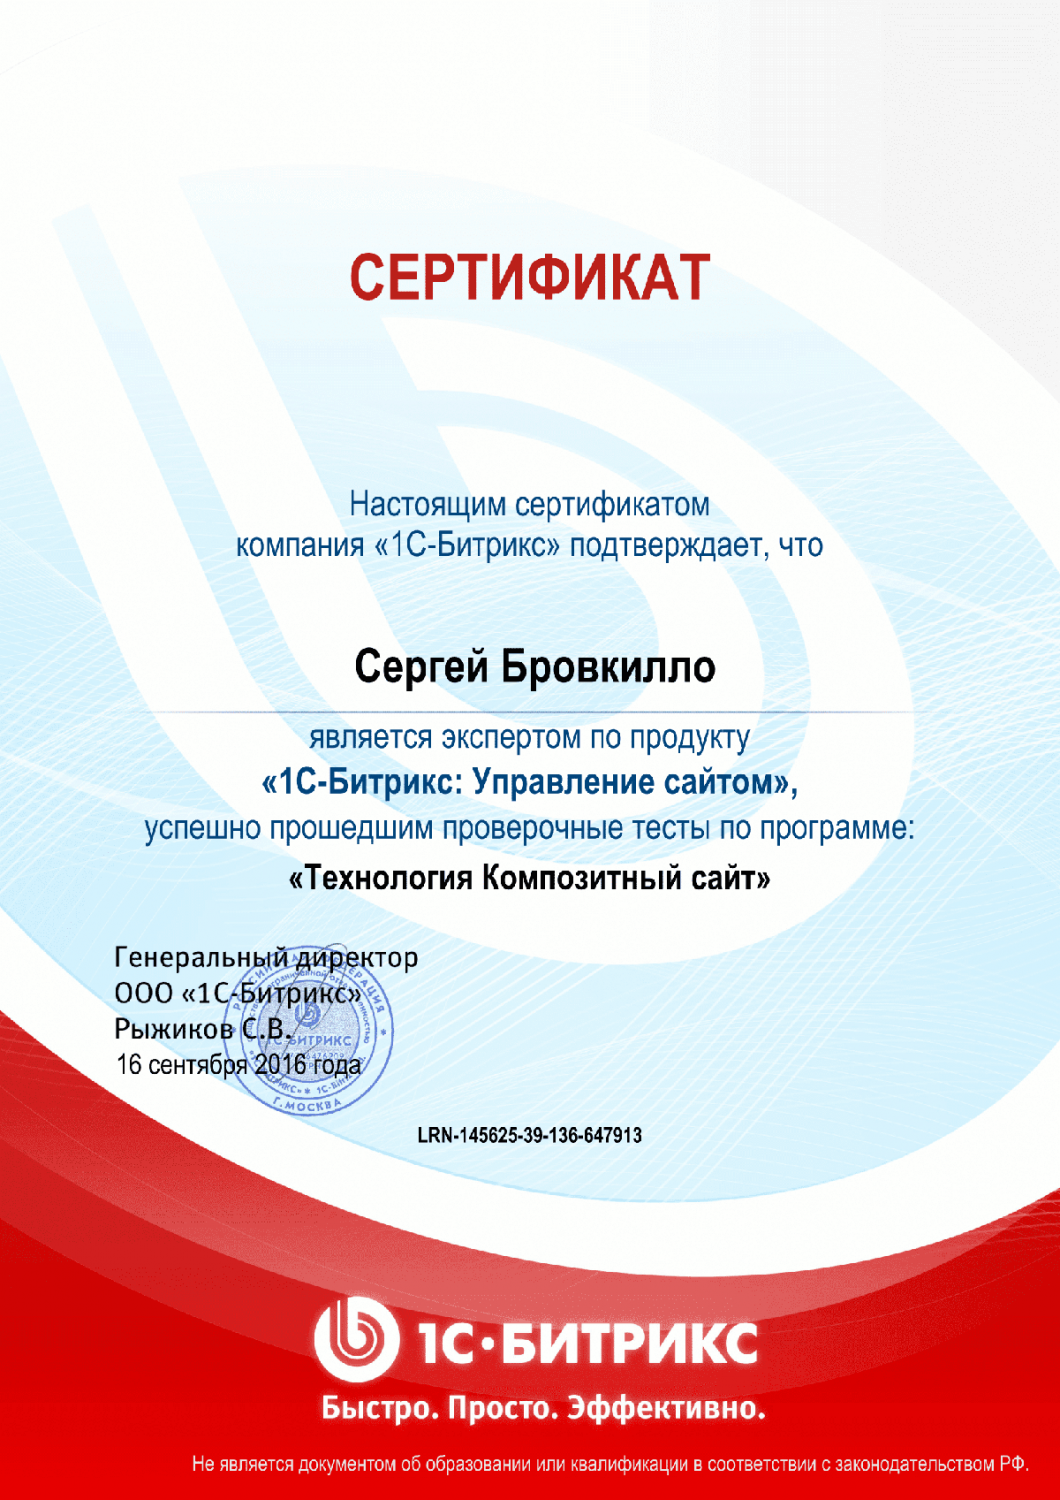 Сертификат "Технология Композитный сайт" в Иваново